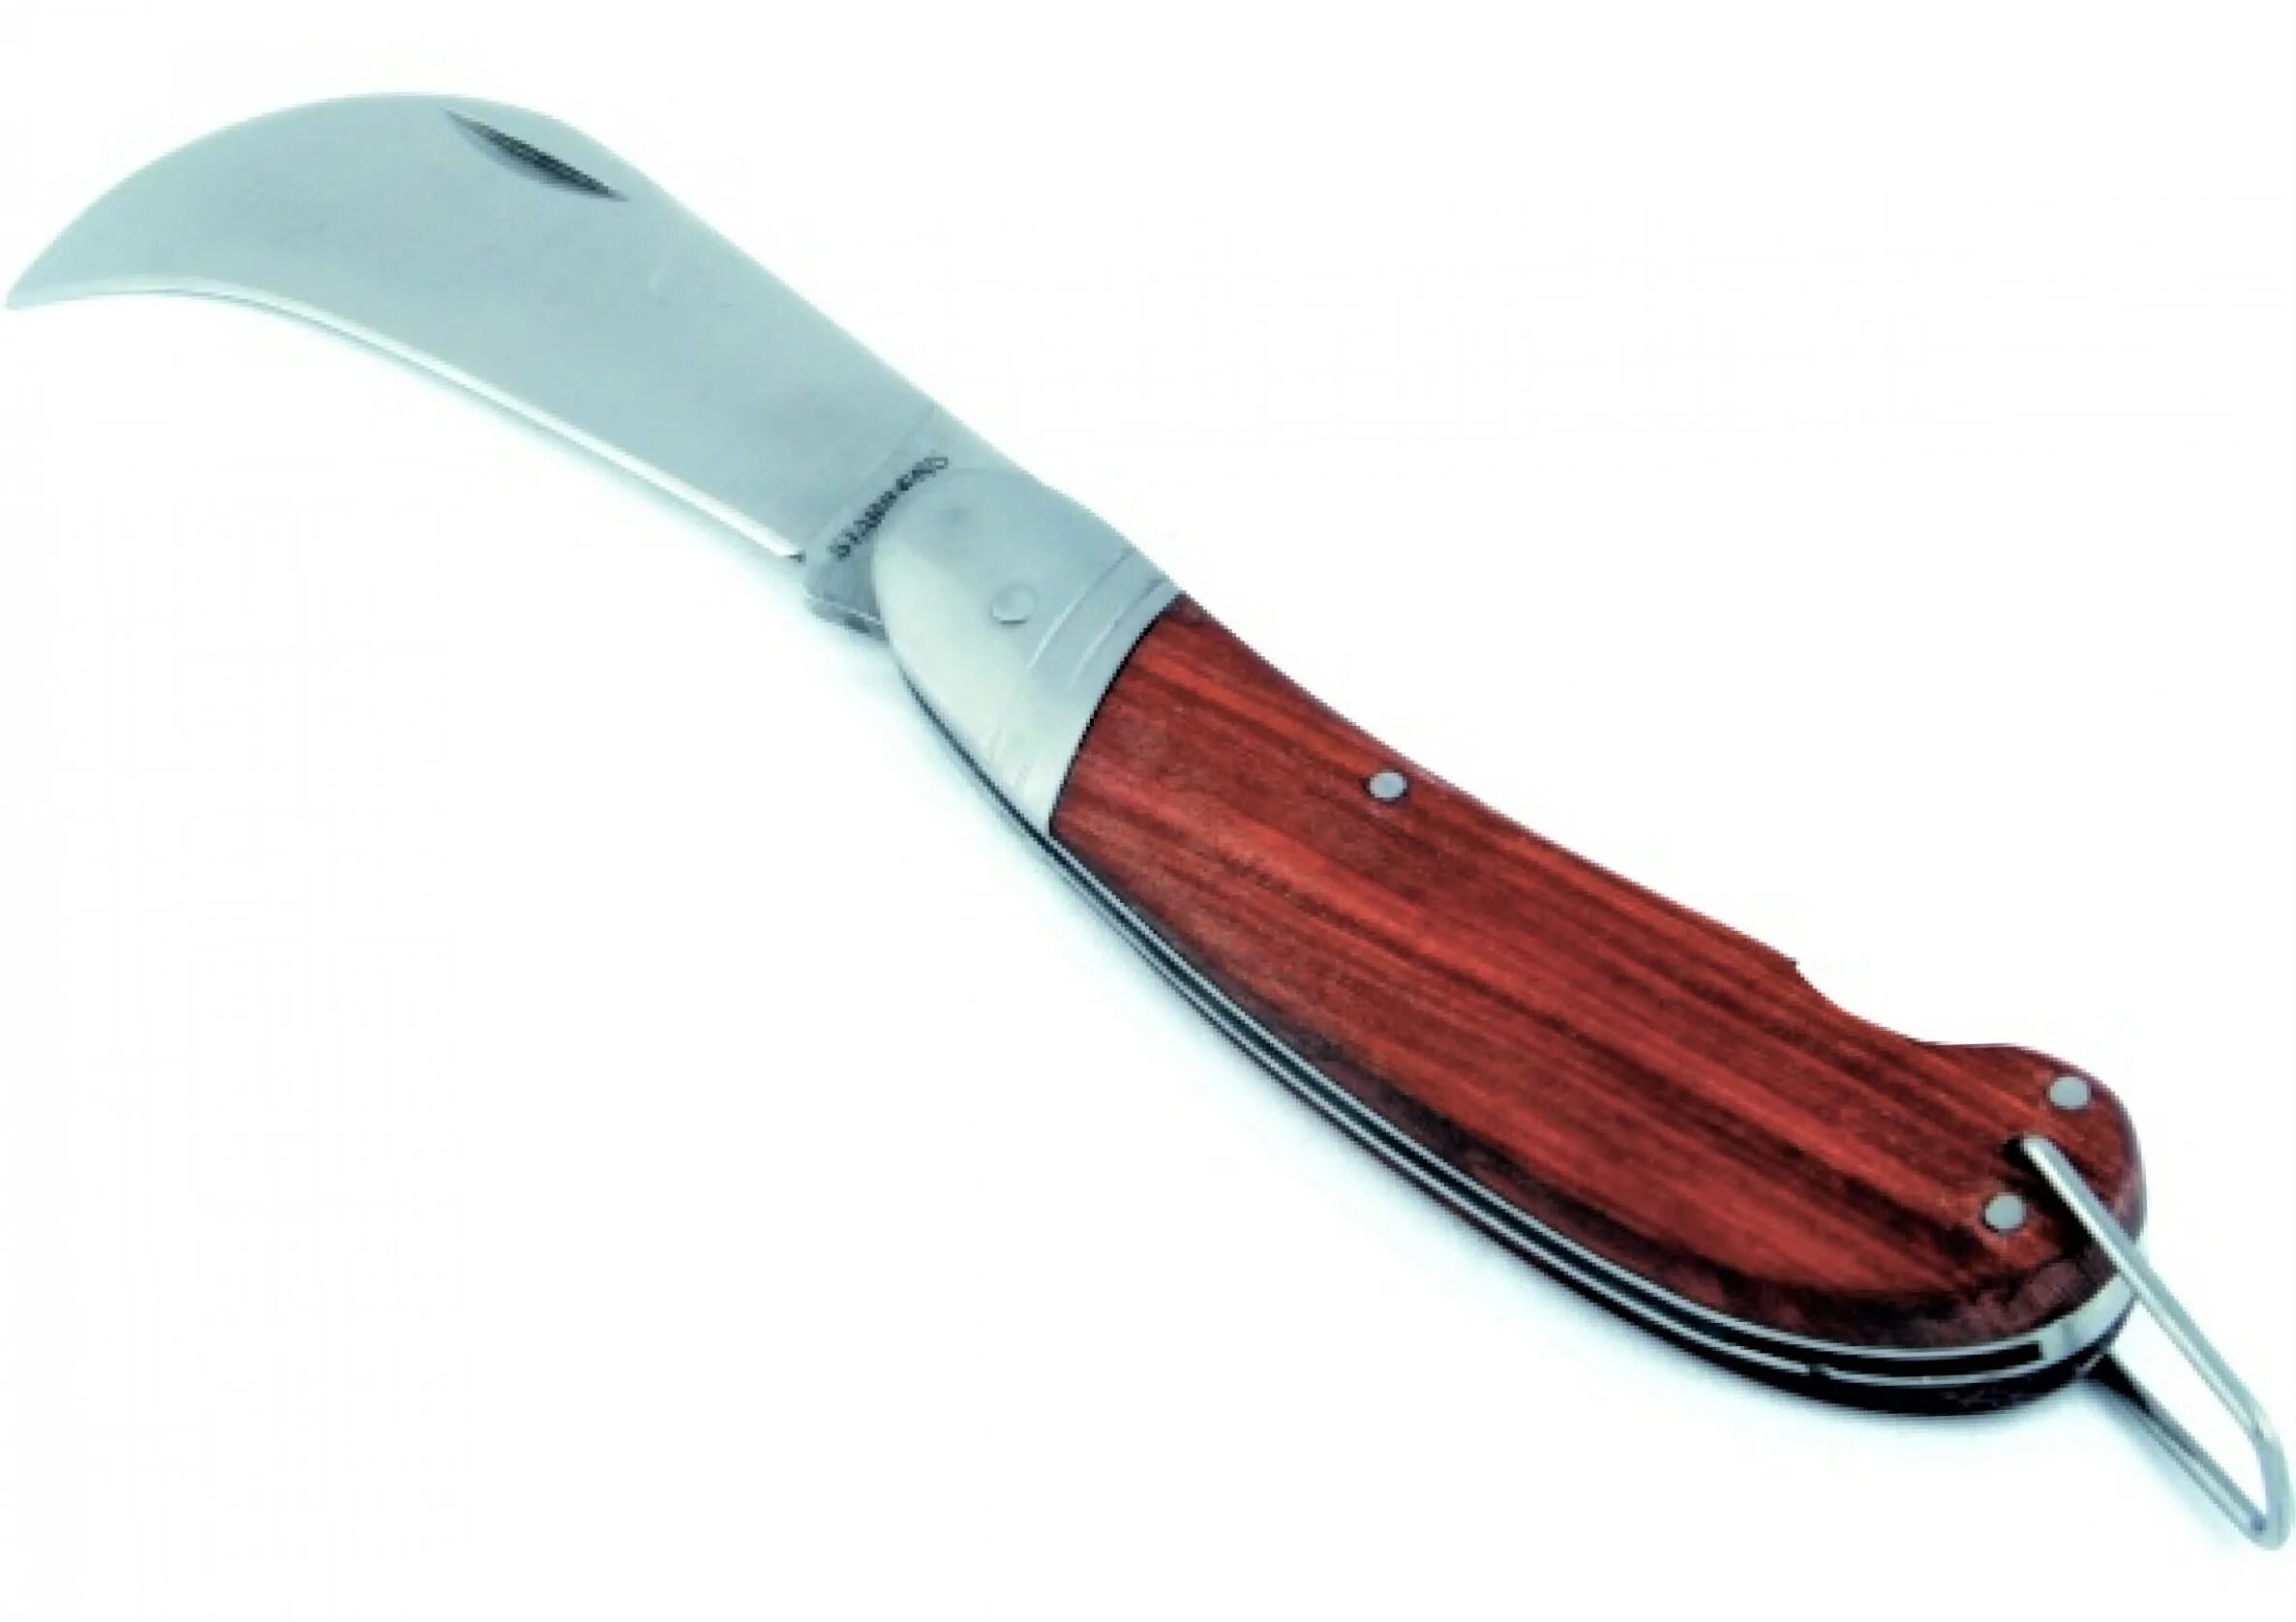 Нож с изогнутым лезвием. Нож монтерский серповидный. Нож монтерский складной. Wang706 нож серповидный. Нож складной с изогнутым лезвием Greenlee.